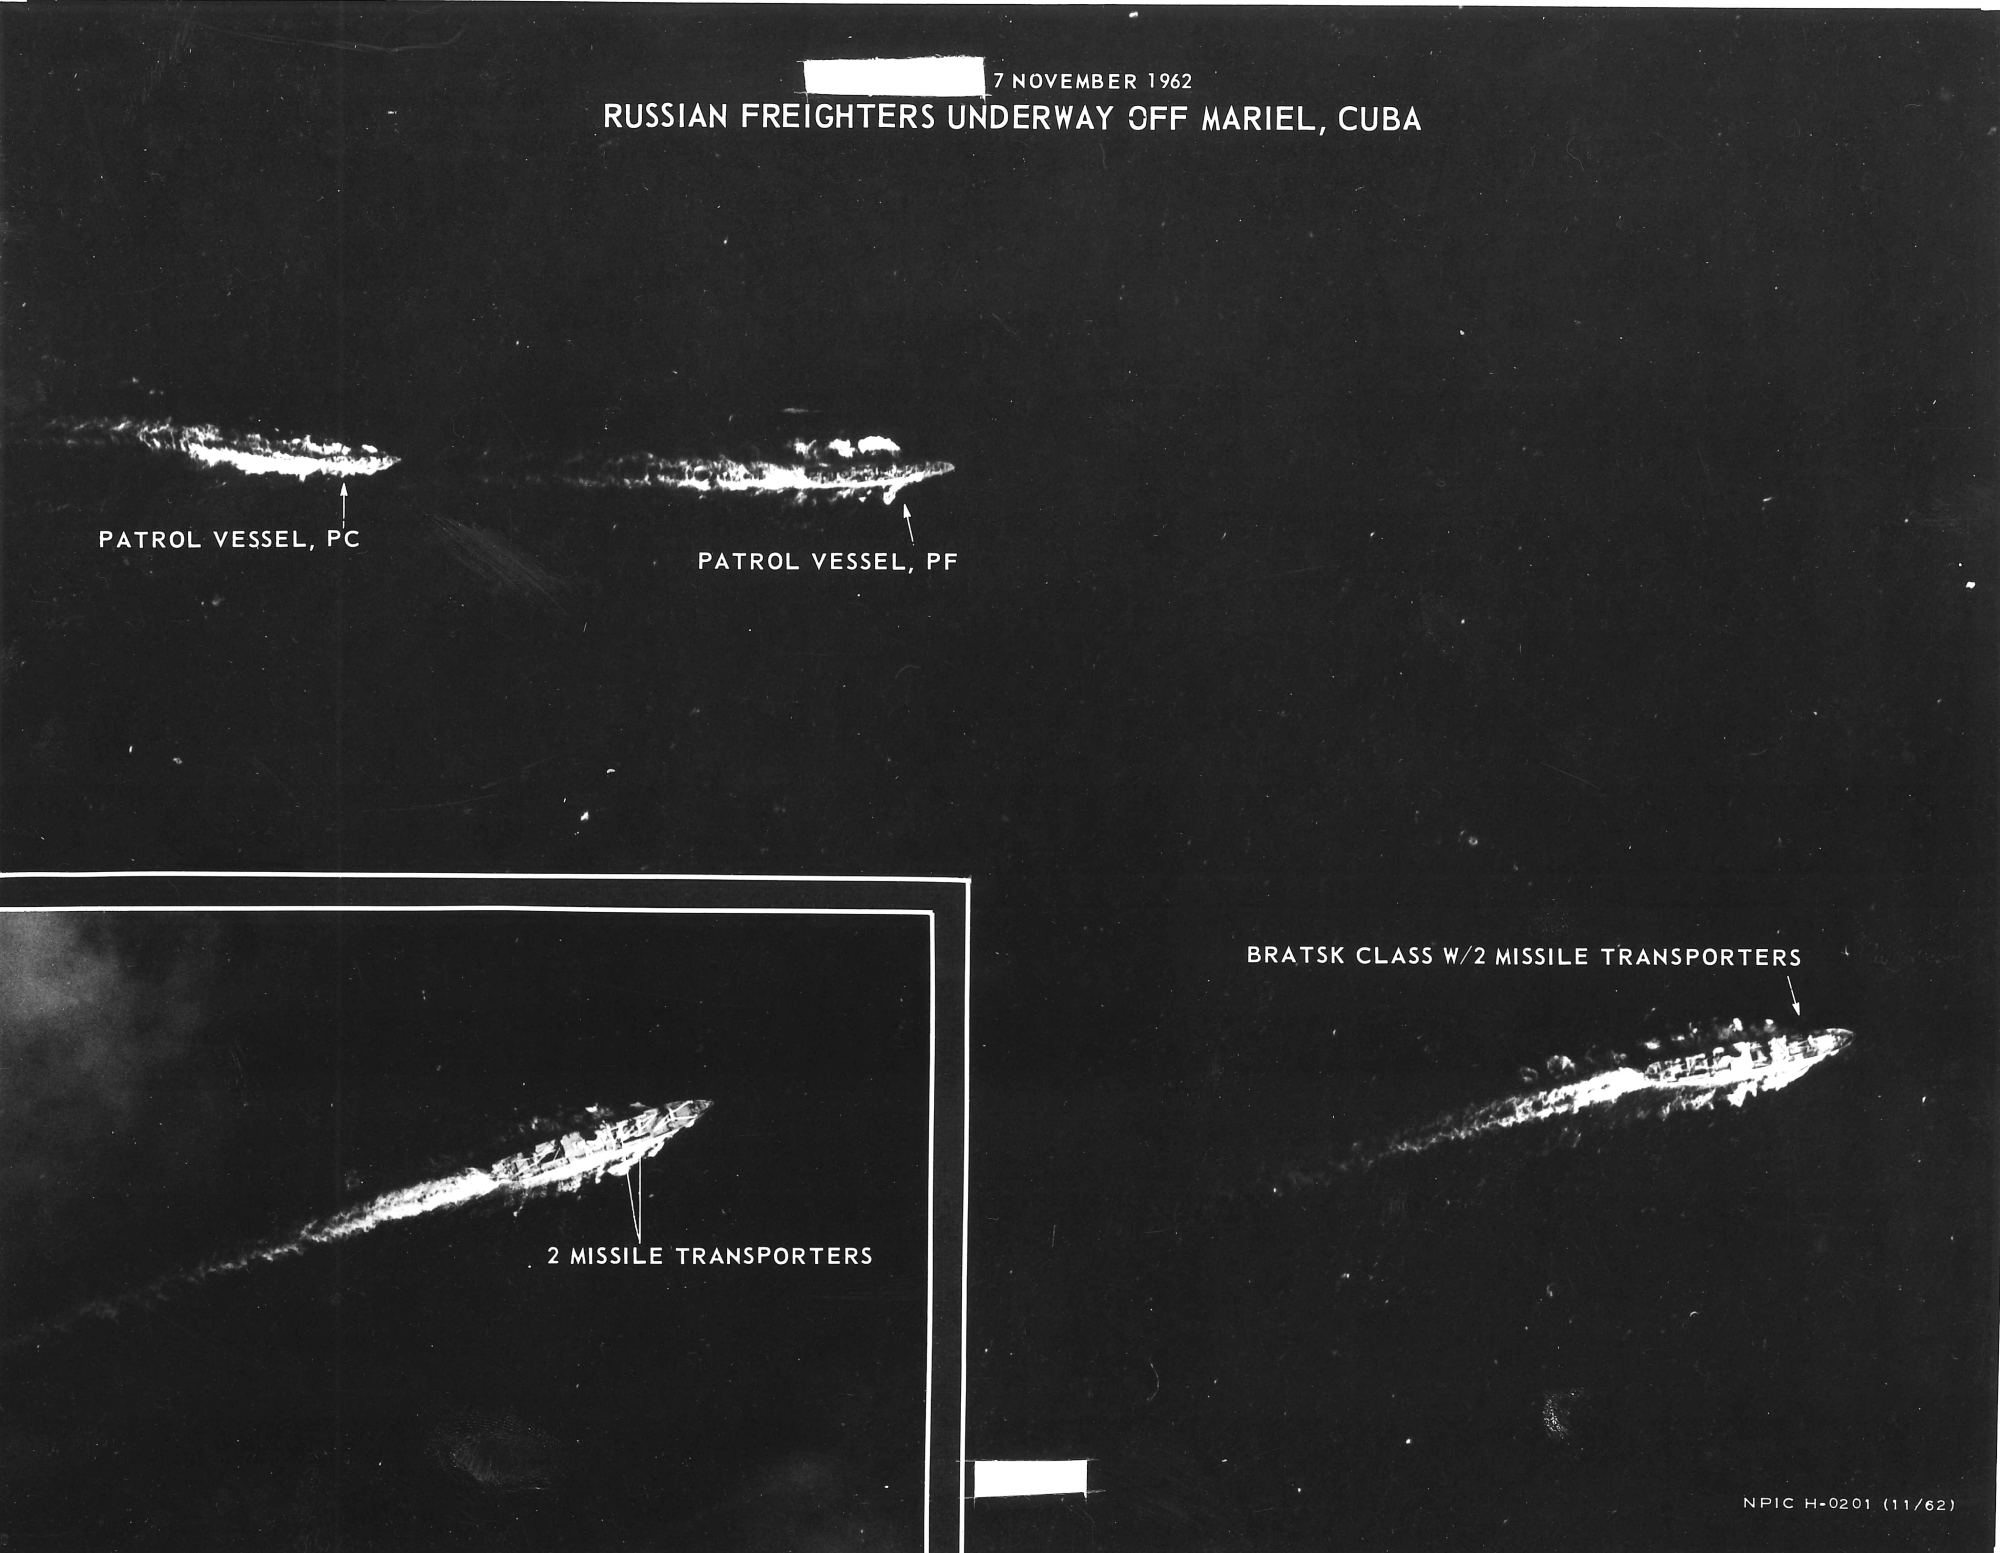 Barcos soviéticos llevándose de Cuba los misiles balísticos.